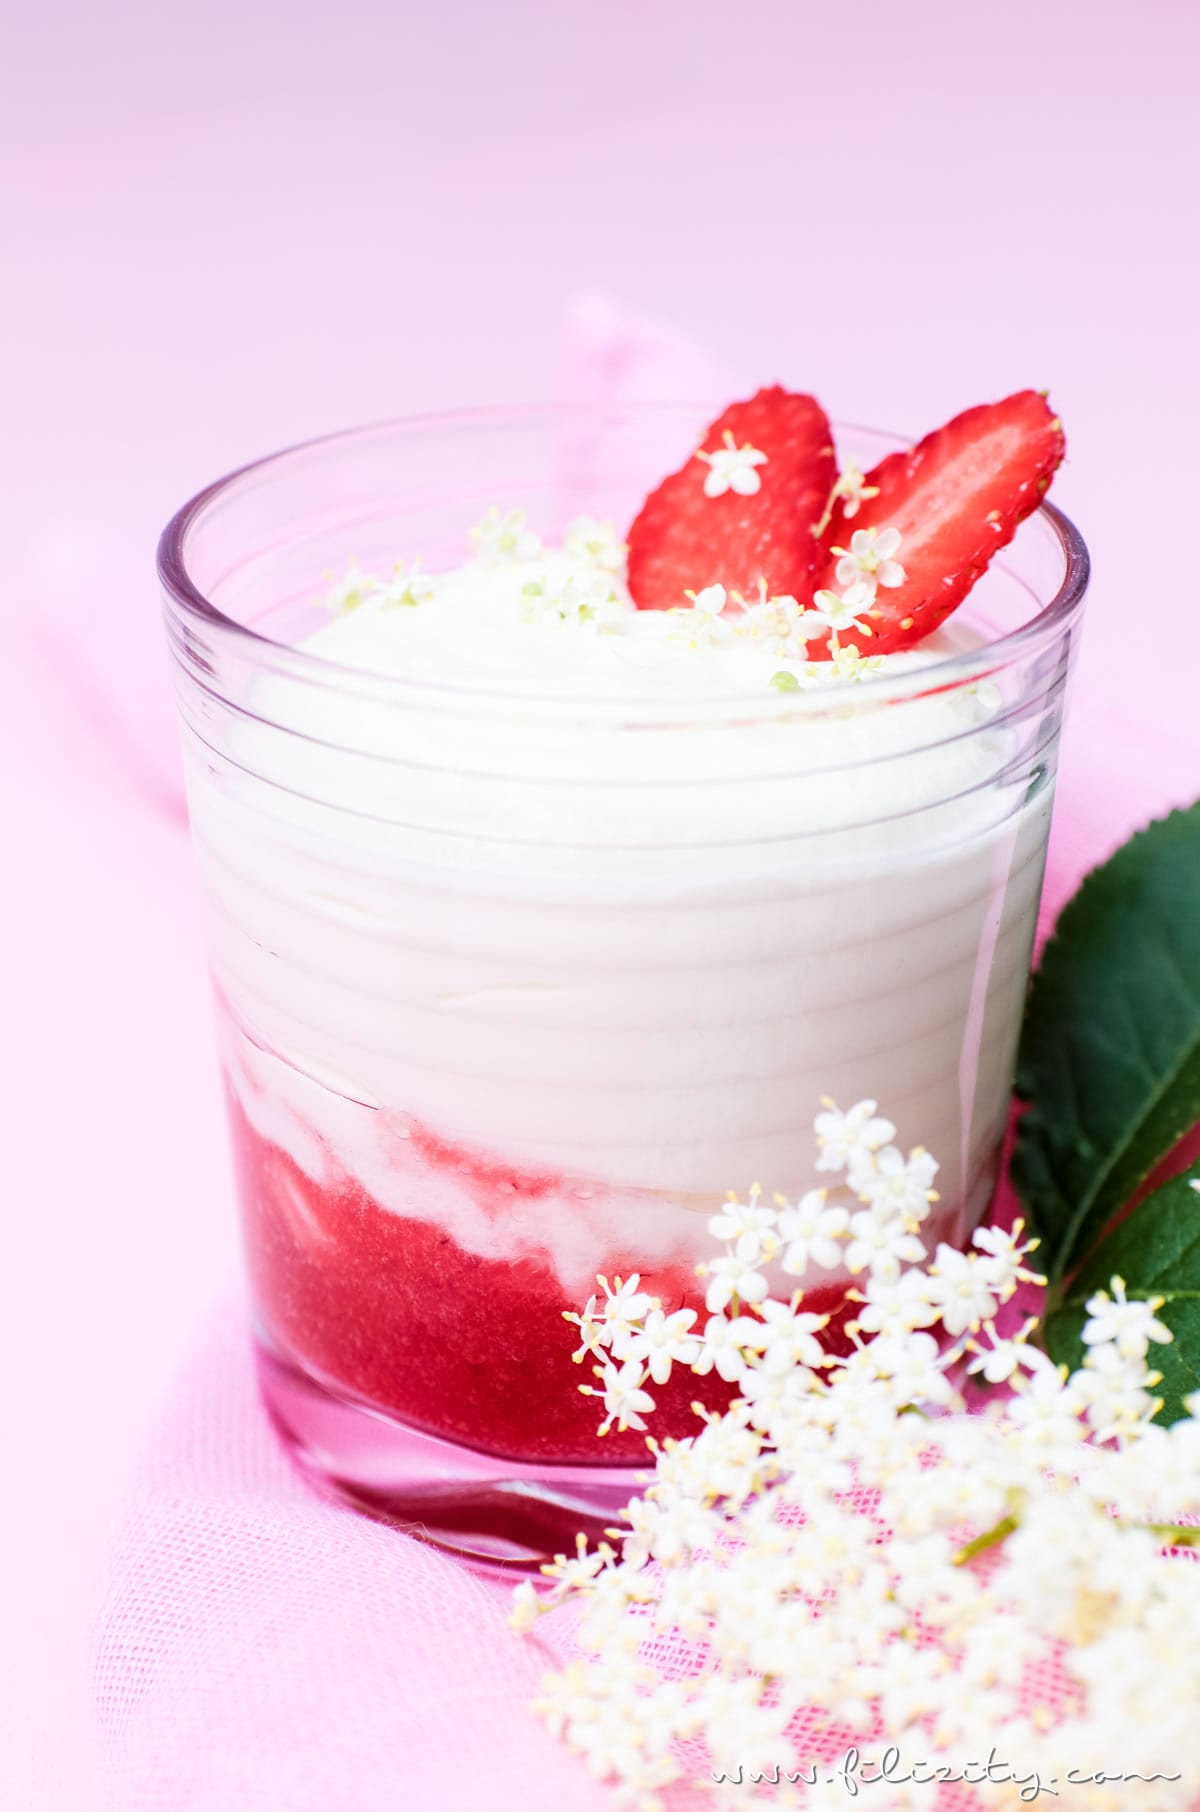 Holunderblüten-Creme (Hollercreme) mit Erdbeer-Swirl - Einfaches Sommer-Dessert aus nur 4 Zutaten | Filizity.com | Food-Blog aus dem Rheinland #holler #sommer